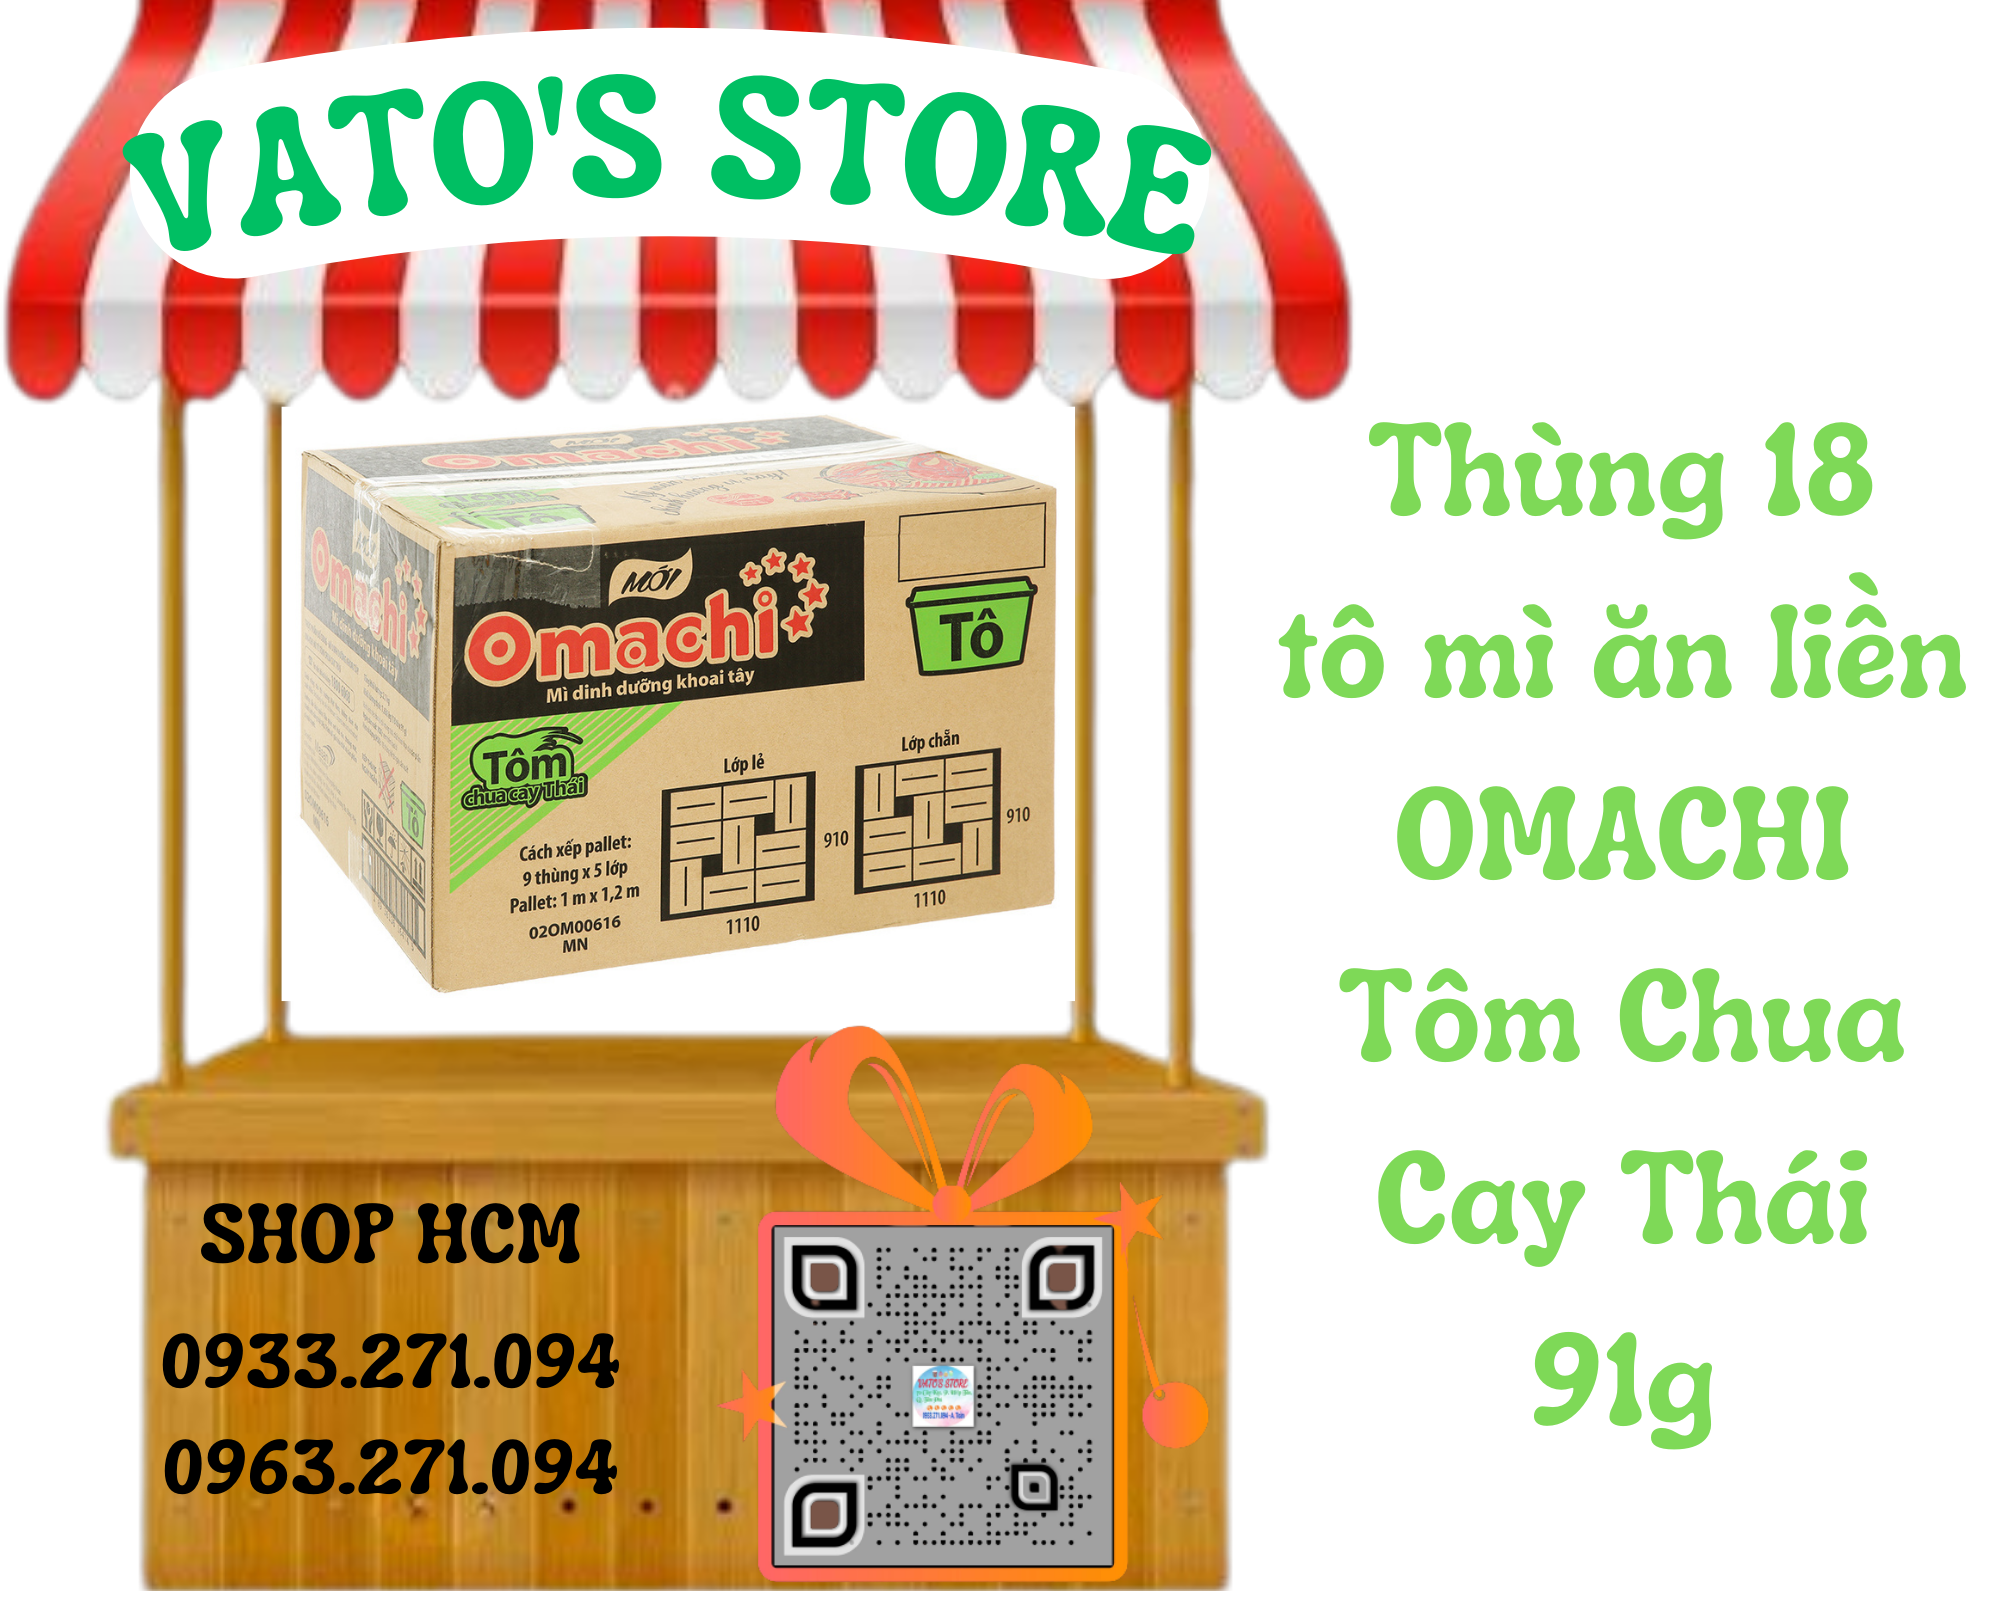 Thùng 18 hộp mì khoai tây Omachi vị tôm chua cay thái 91g / Combo 4 hộp mì khoai tây Omachi vị tôm chua cay thái 91g